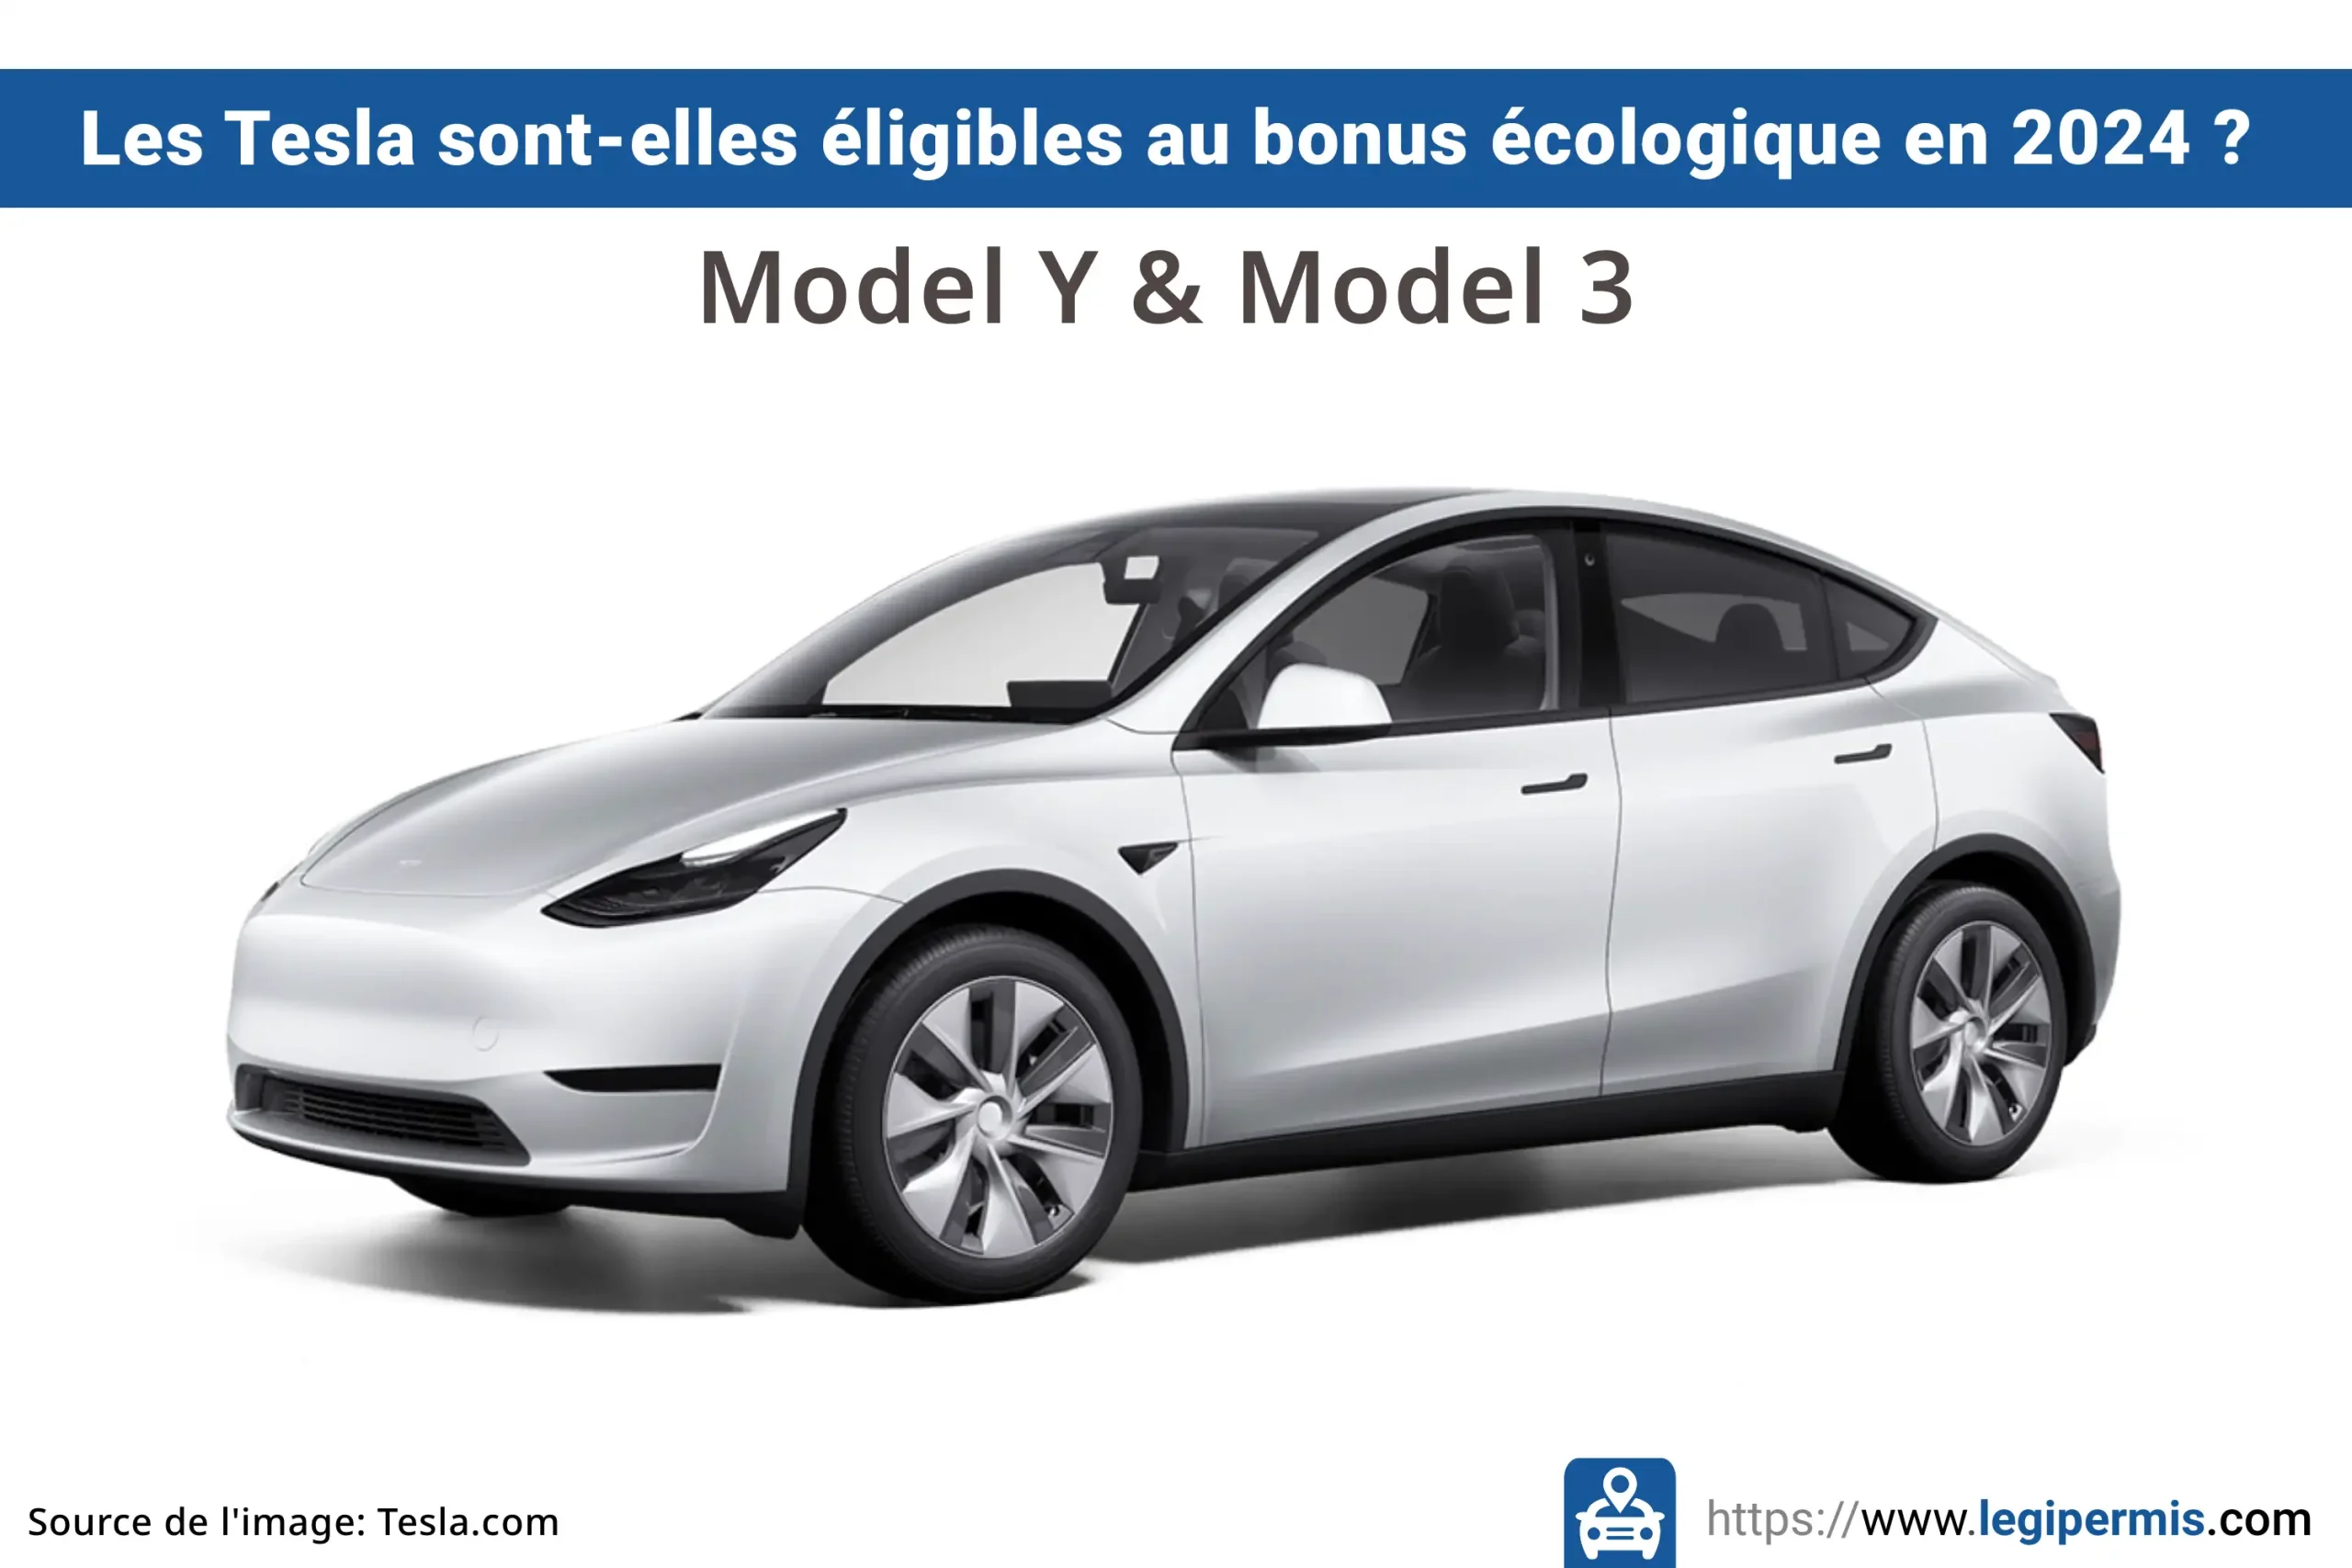 Tesla model 3 et model Y : éligibilité au bonus écologique 2024